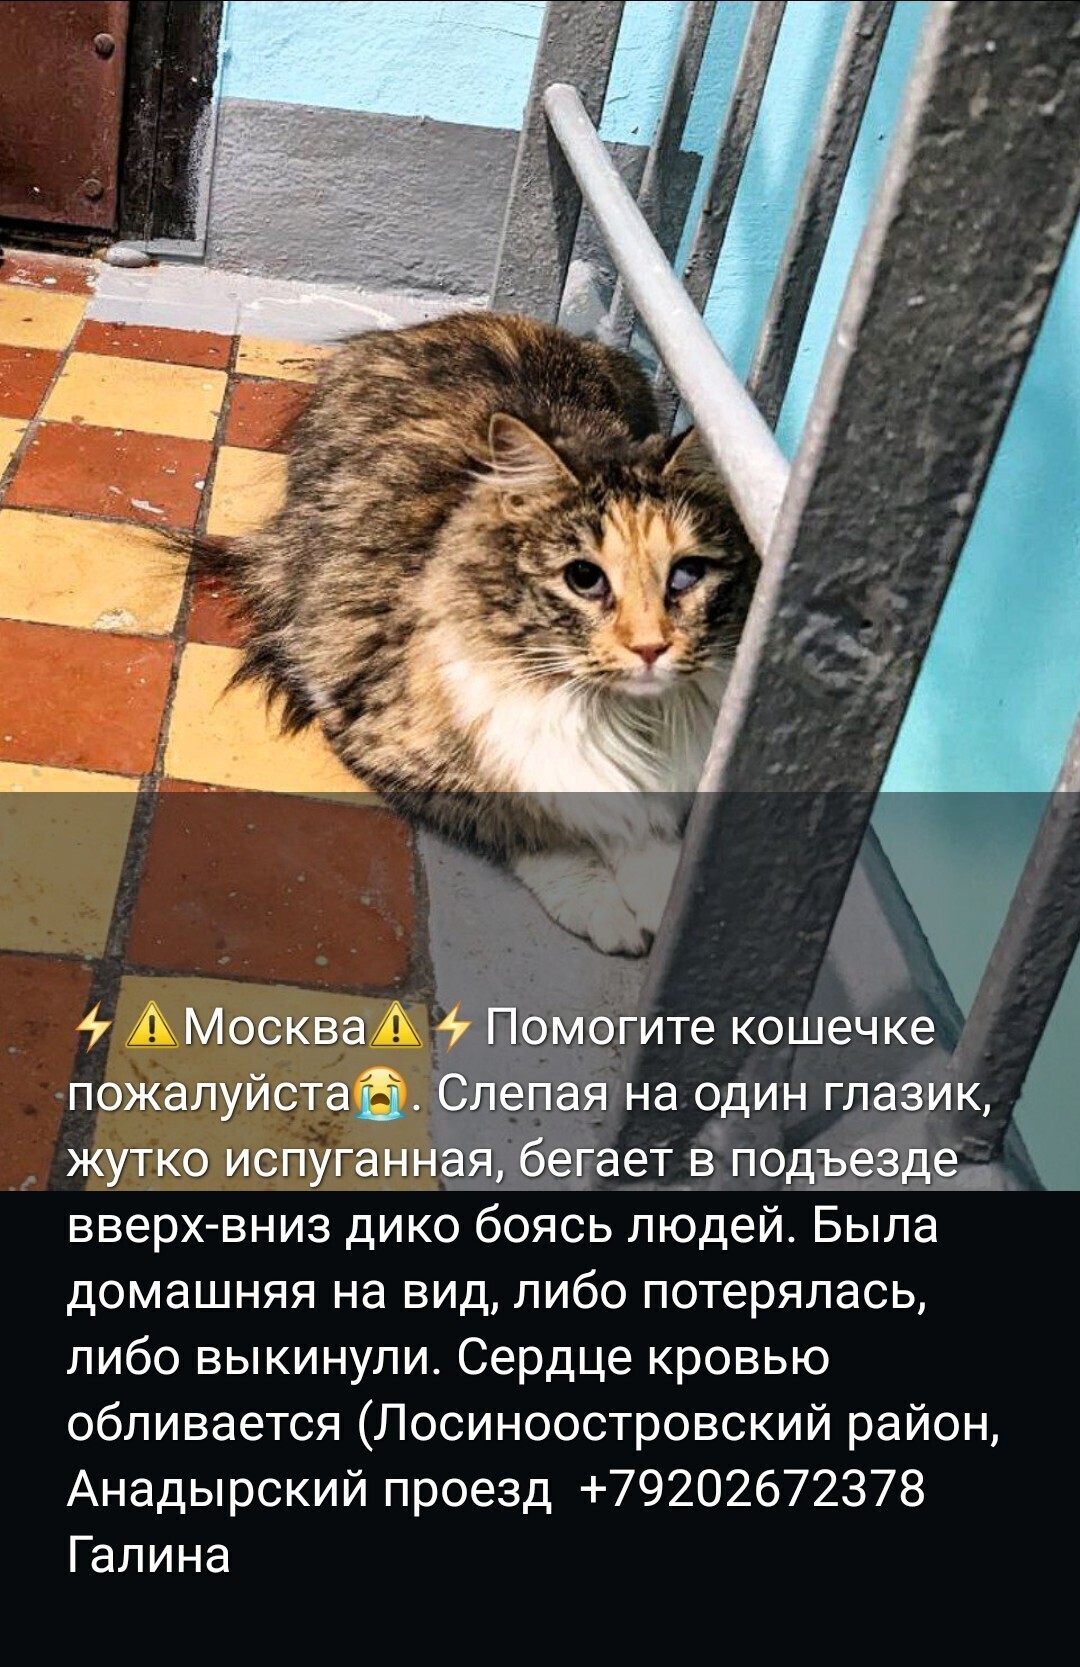 Найдена кошка: Анадырский пр-д, 39 к1